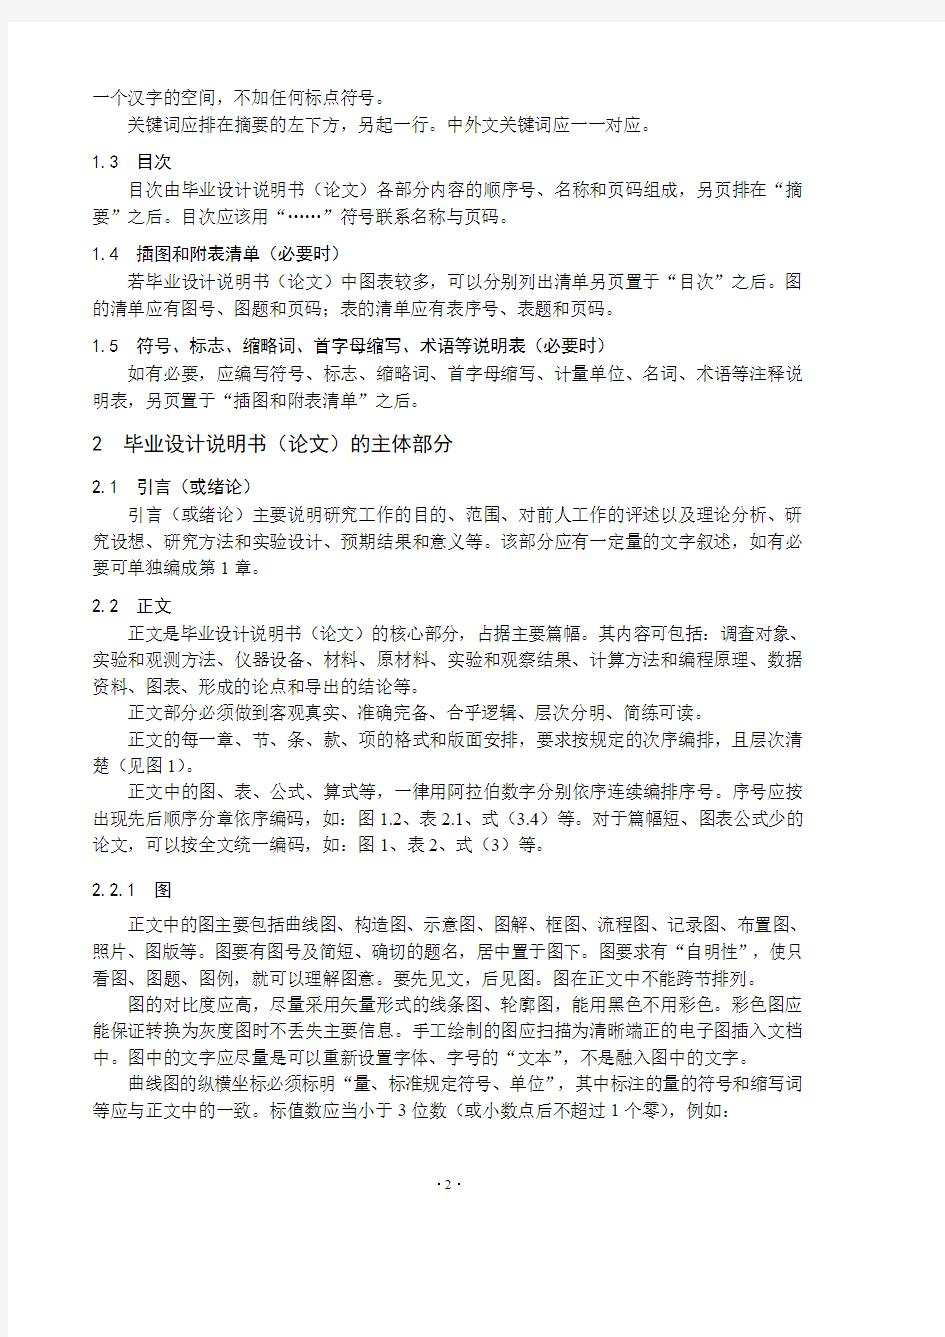 毕业设计说明书(论文)的基本构成及其表述-Nanjing